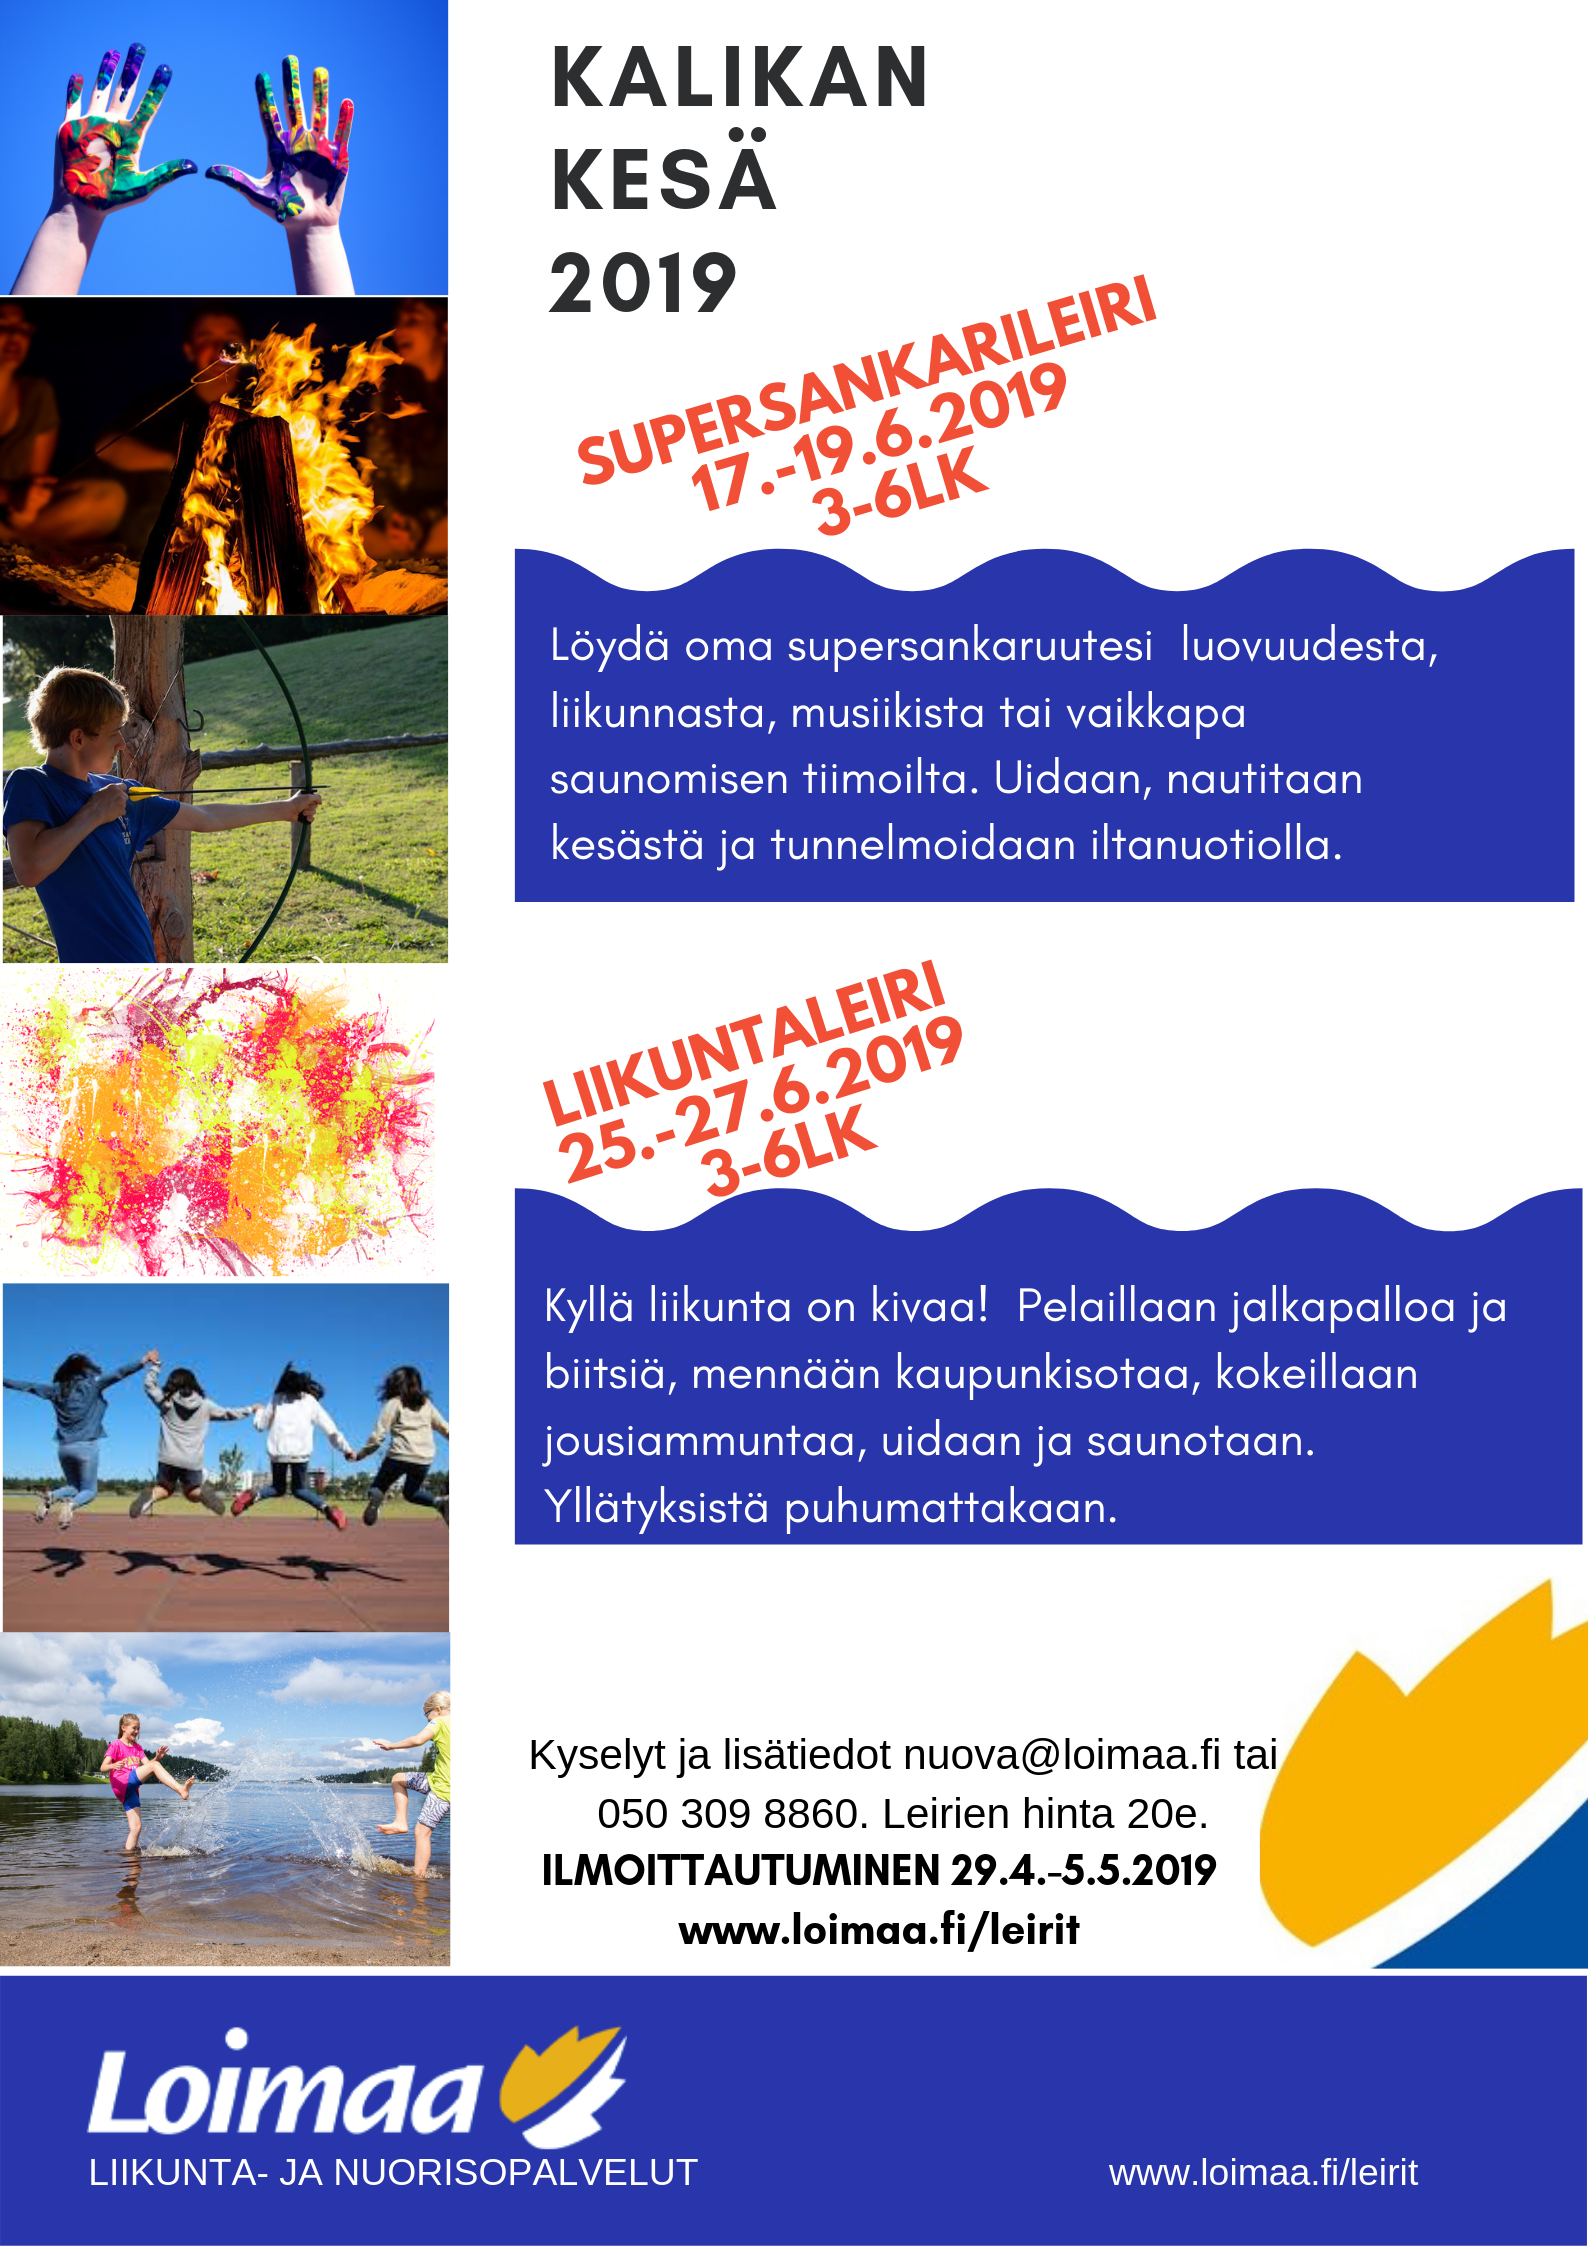 Supersankarileiri 3-6 -luokkalaisille  Kalikassa 17.-19.6.2019